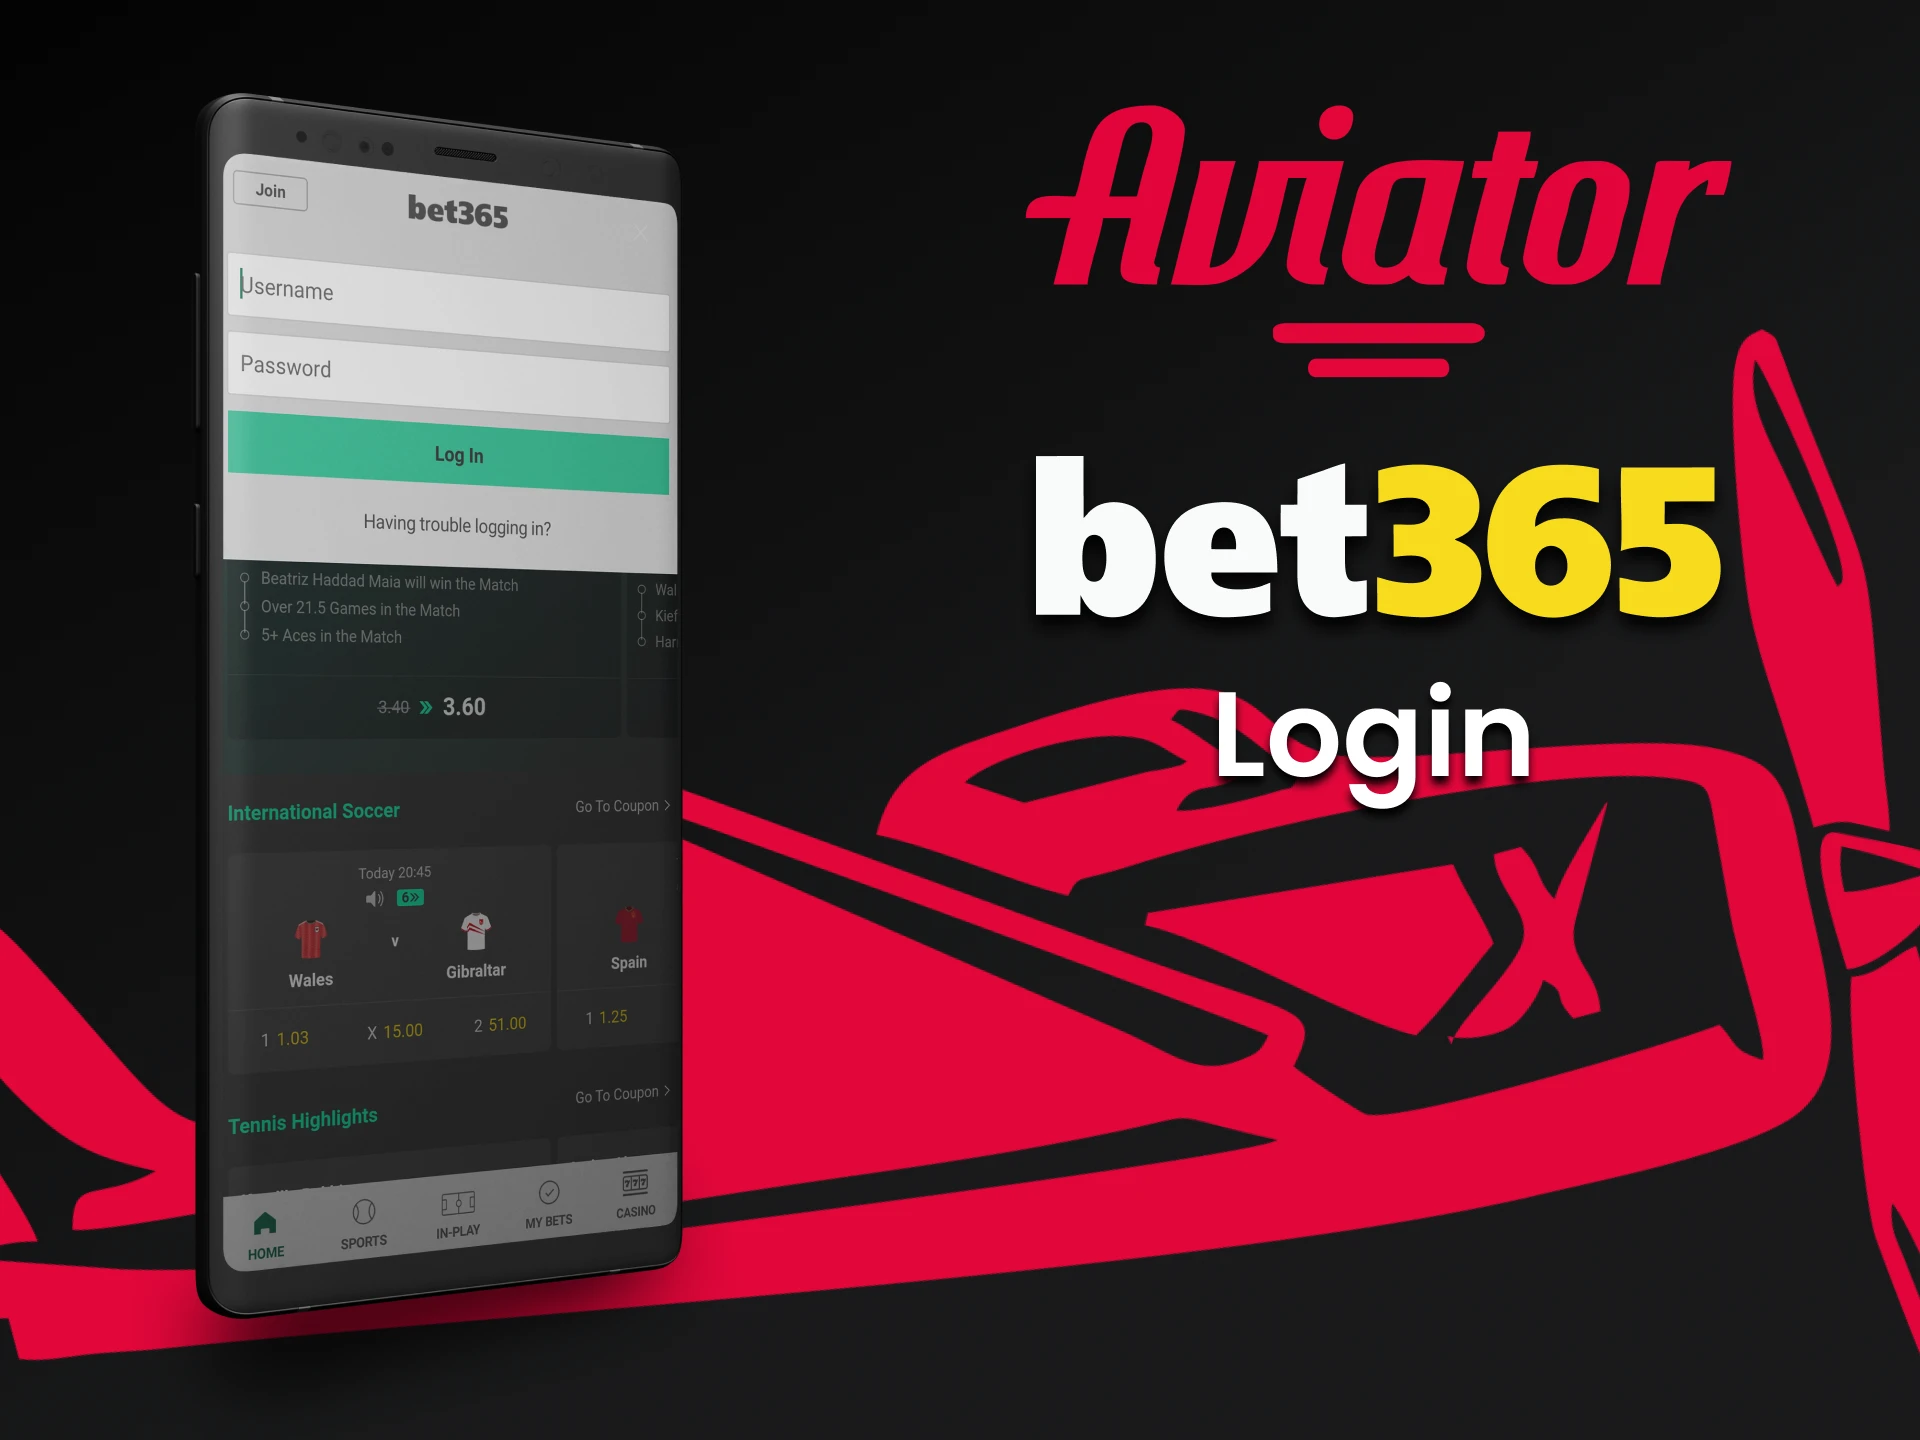 Faça login em sua conta através do aplicativo da Bet365 para jogar Aviator.